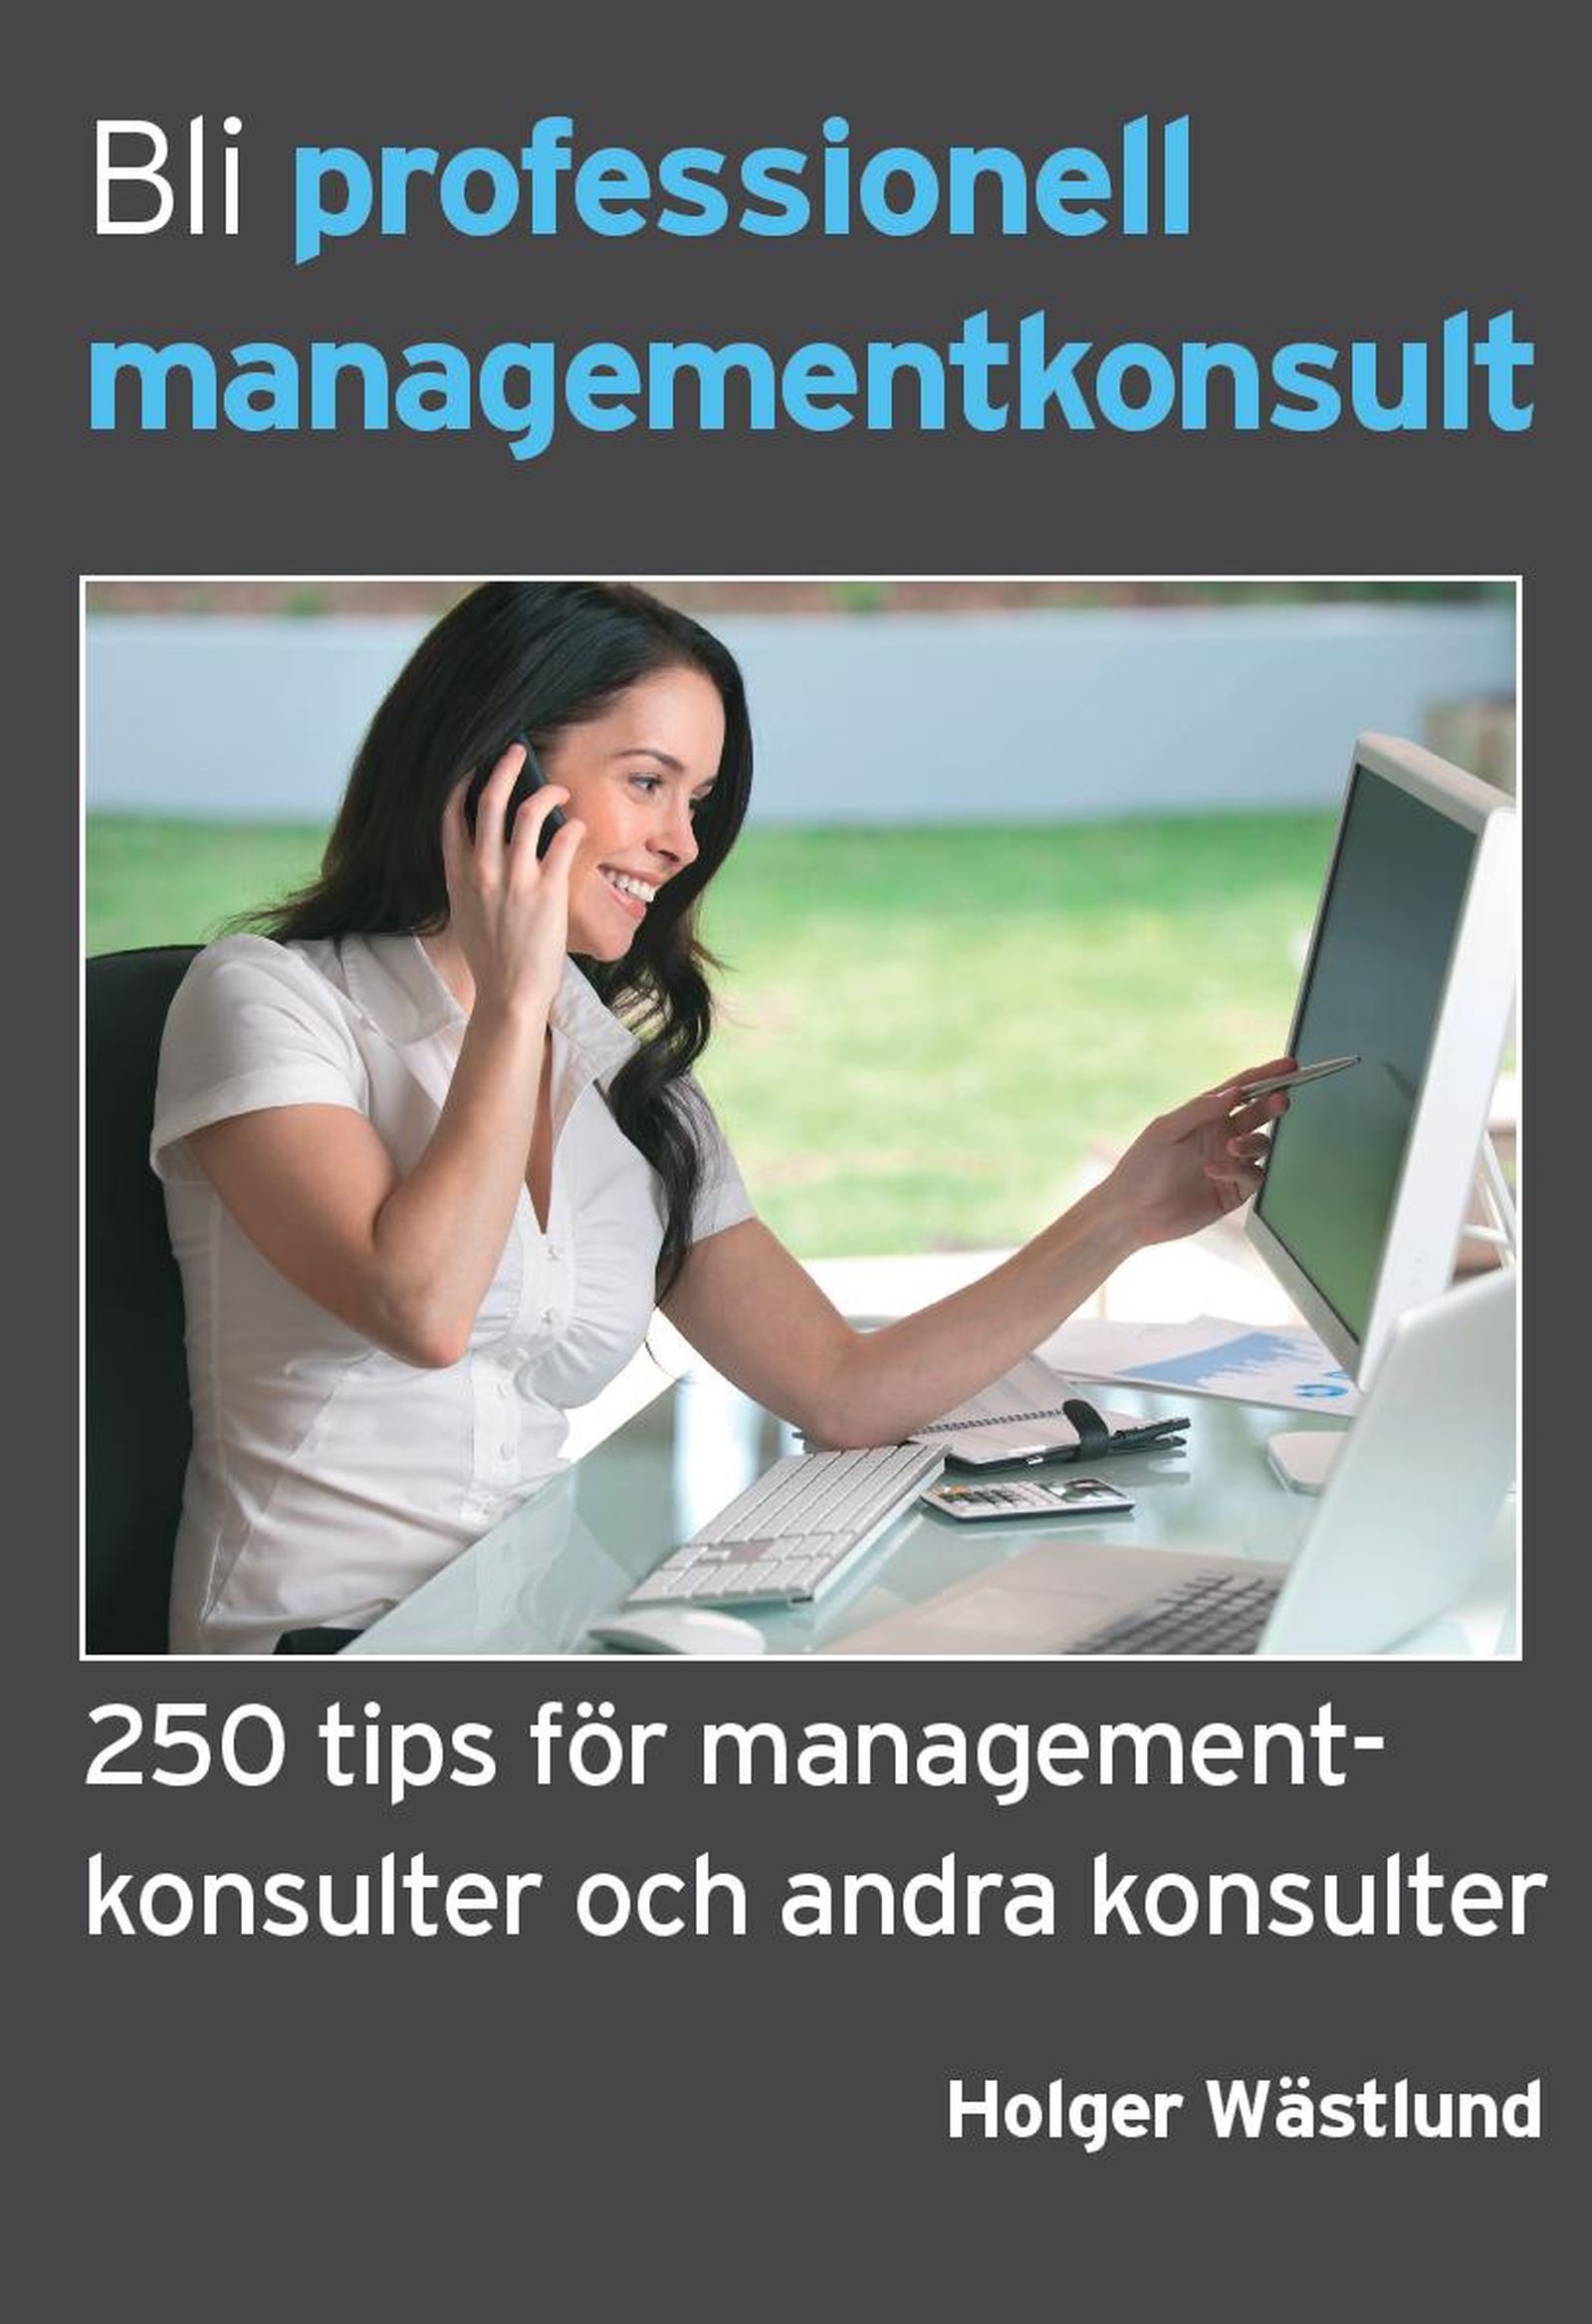 Bli professionell managementkonsult - 250 tips för managementkonsulter och andra konsulter, e-bok av Holger Wästlund